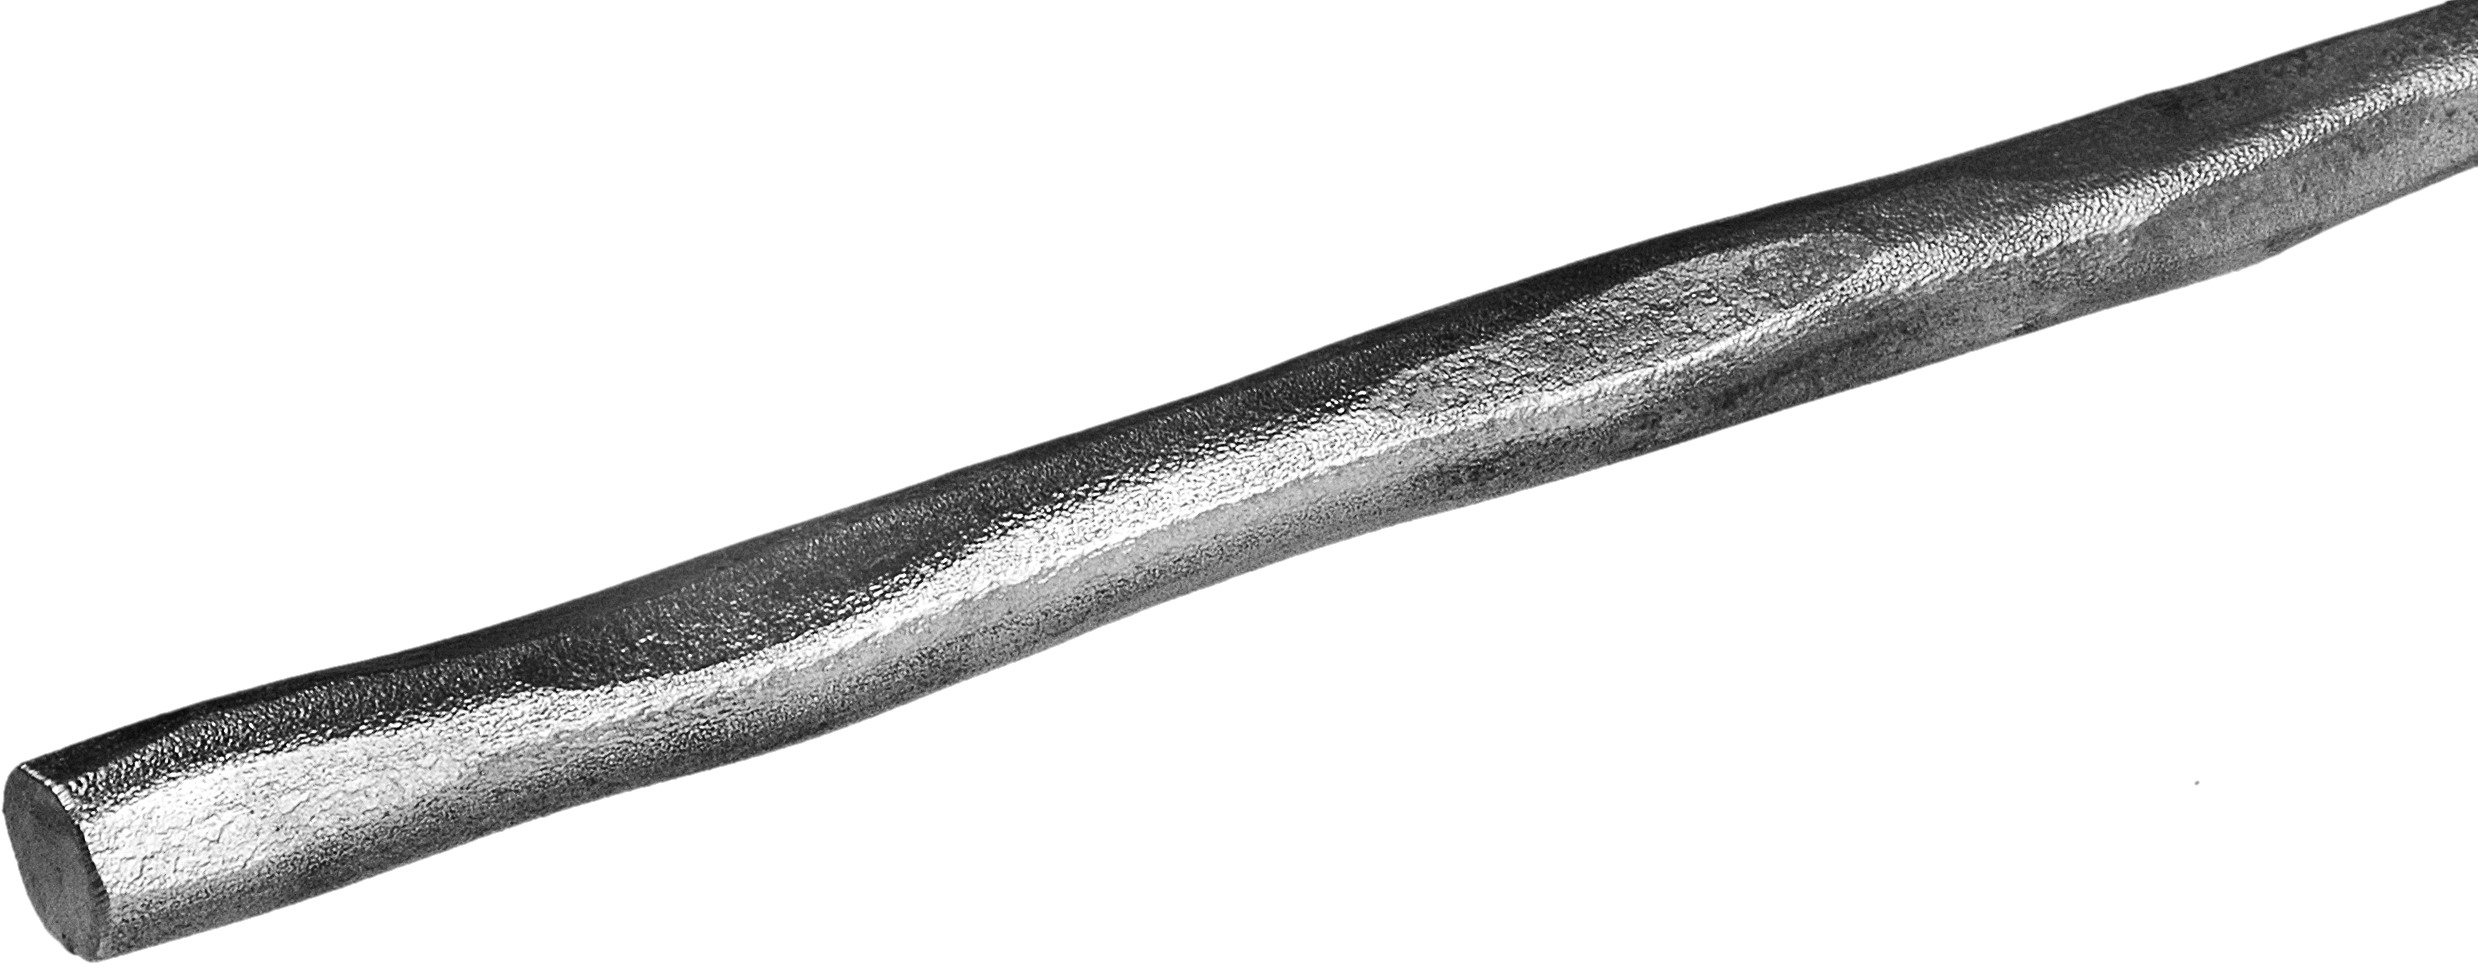 Barre ronde en fer forgé martelé d'une longueur de 1000mm et d'un diamètre de 12mm. A souder.